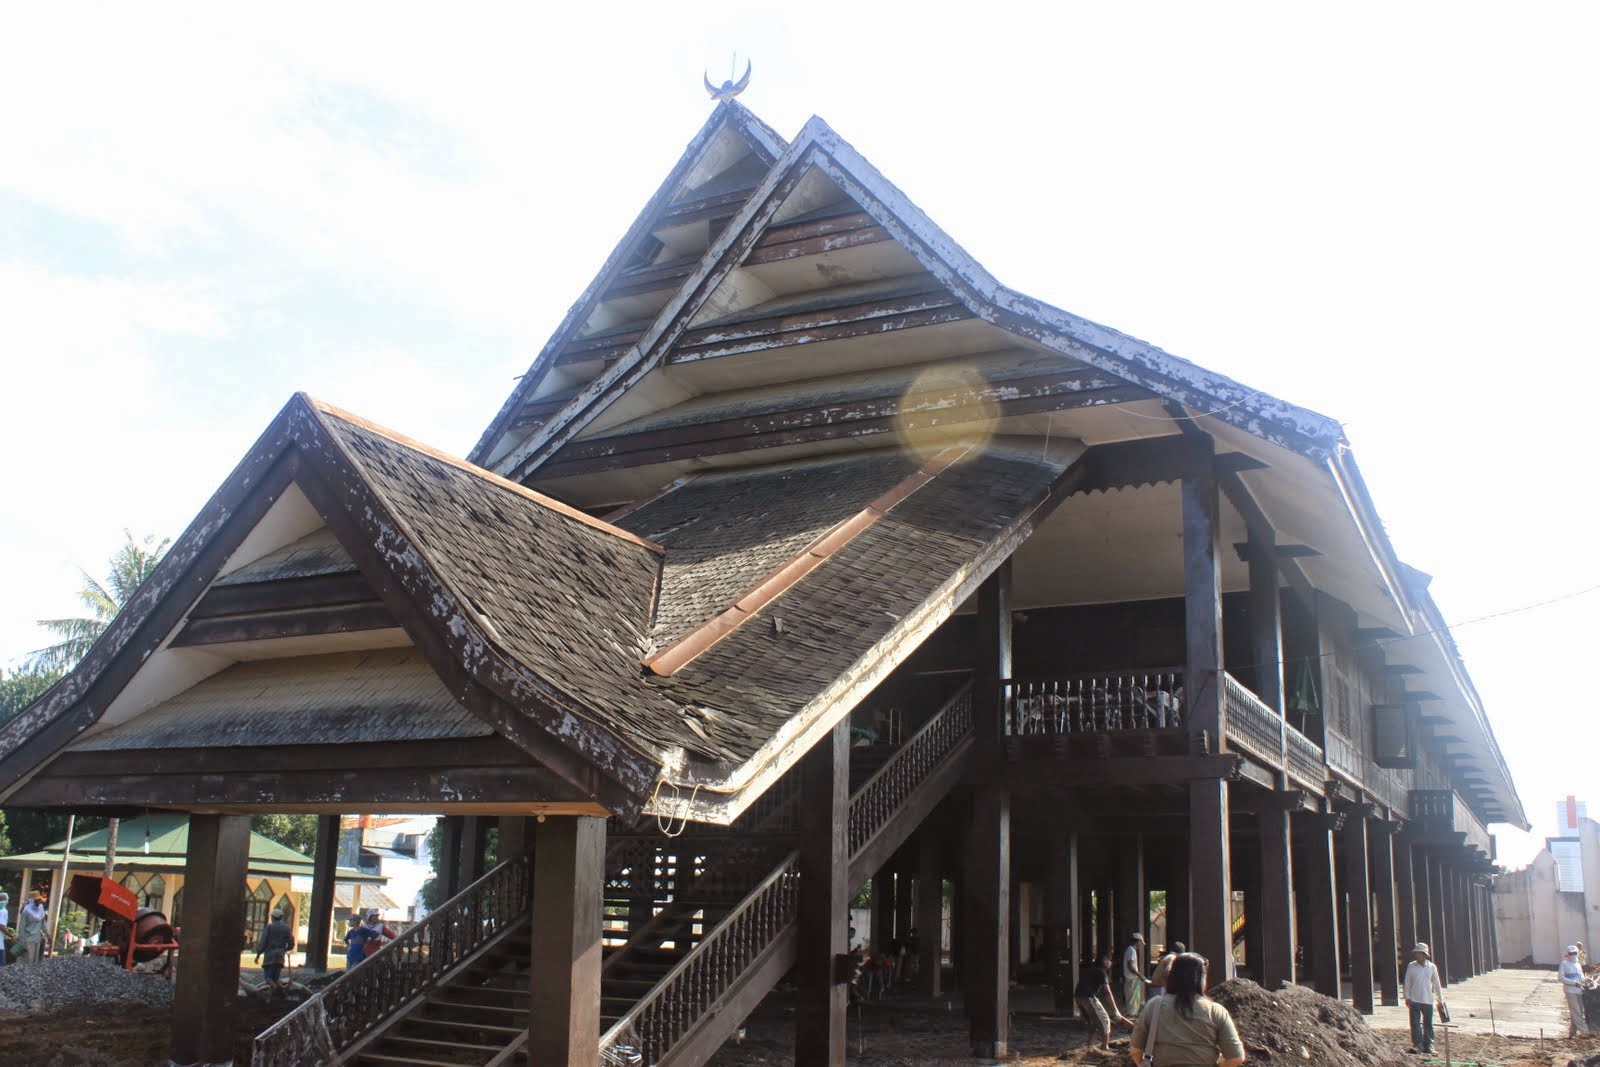 Laikas, Rumah Adat Sulawesi Tenggara - TradisiKita, Indonesia